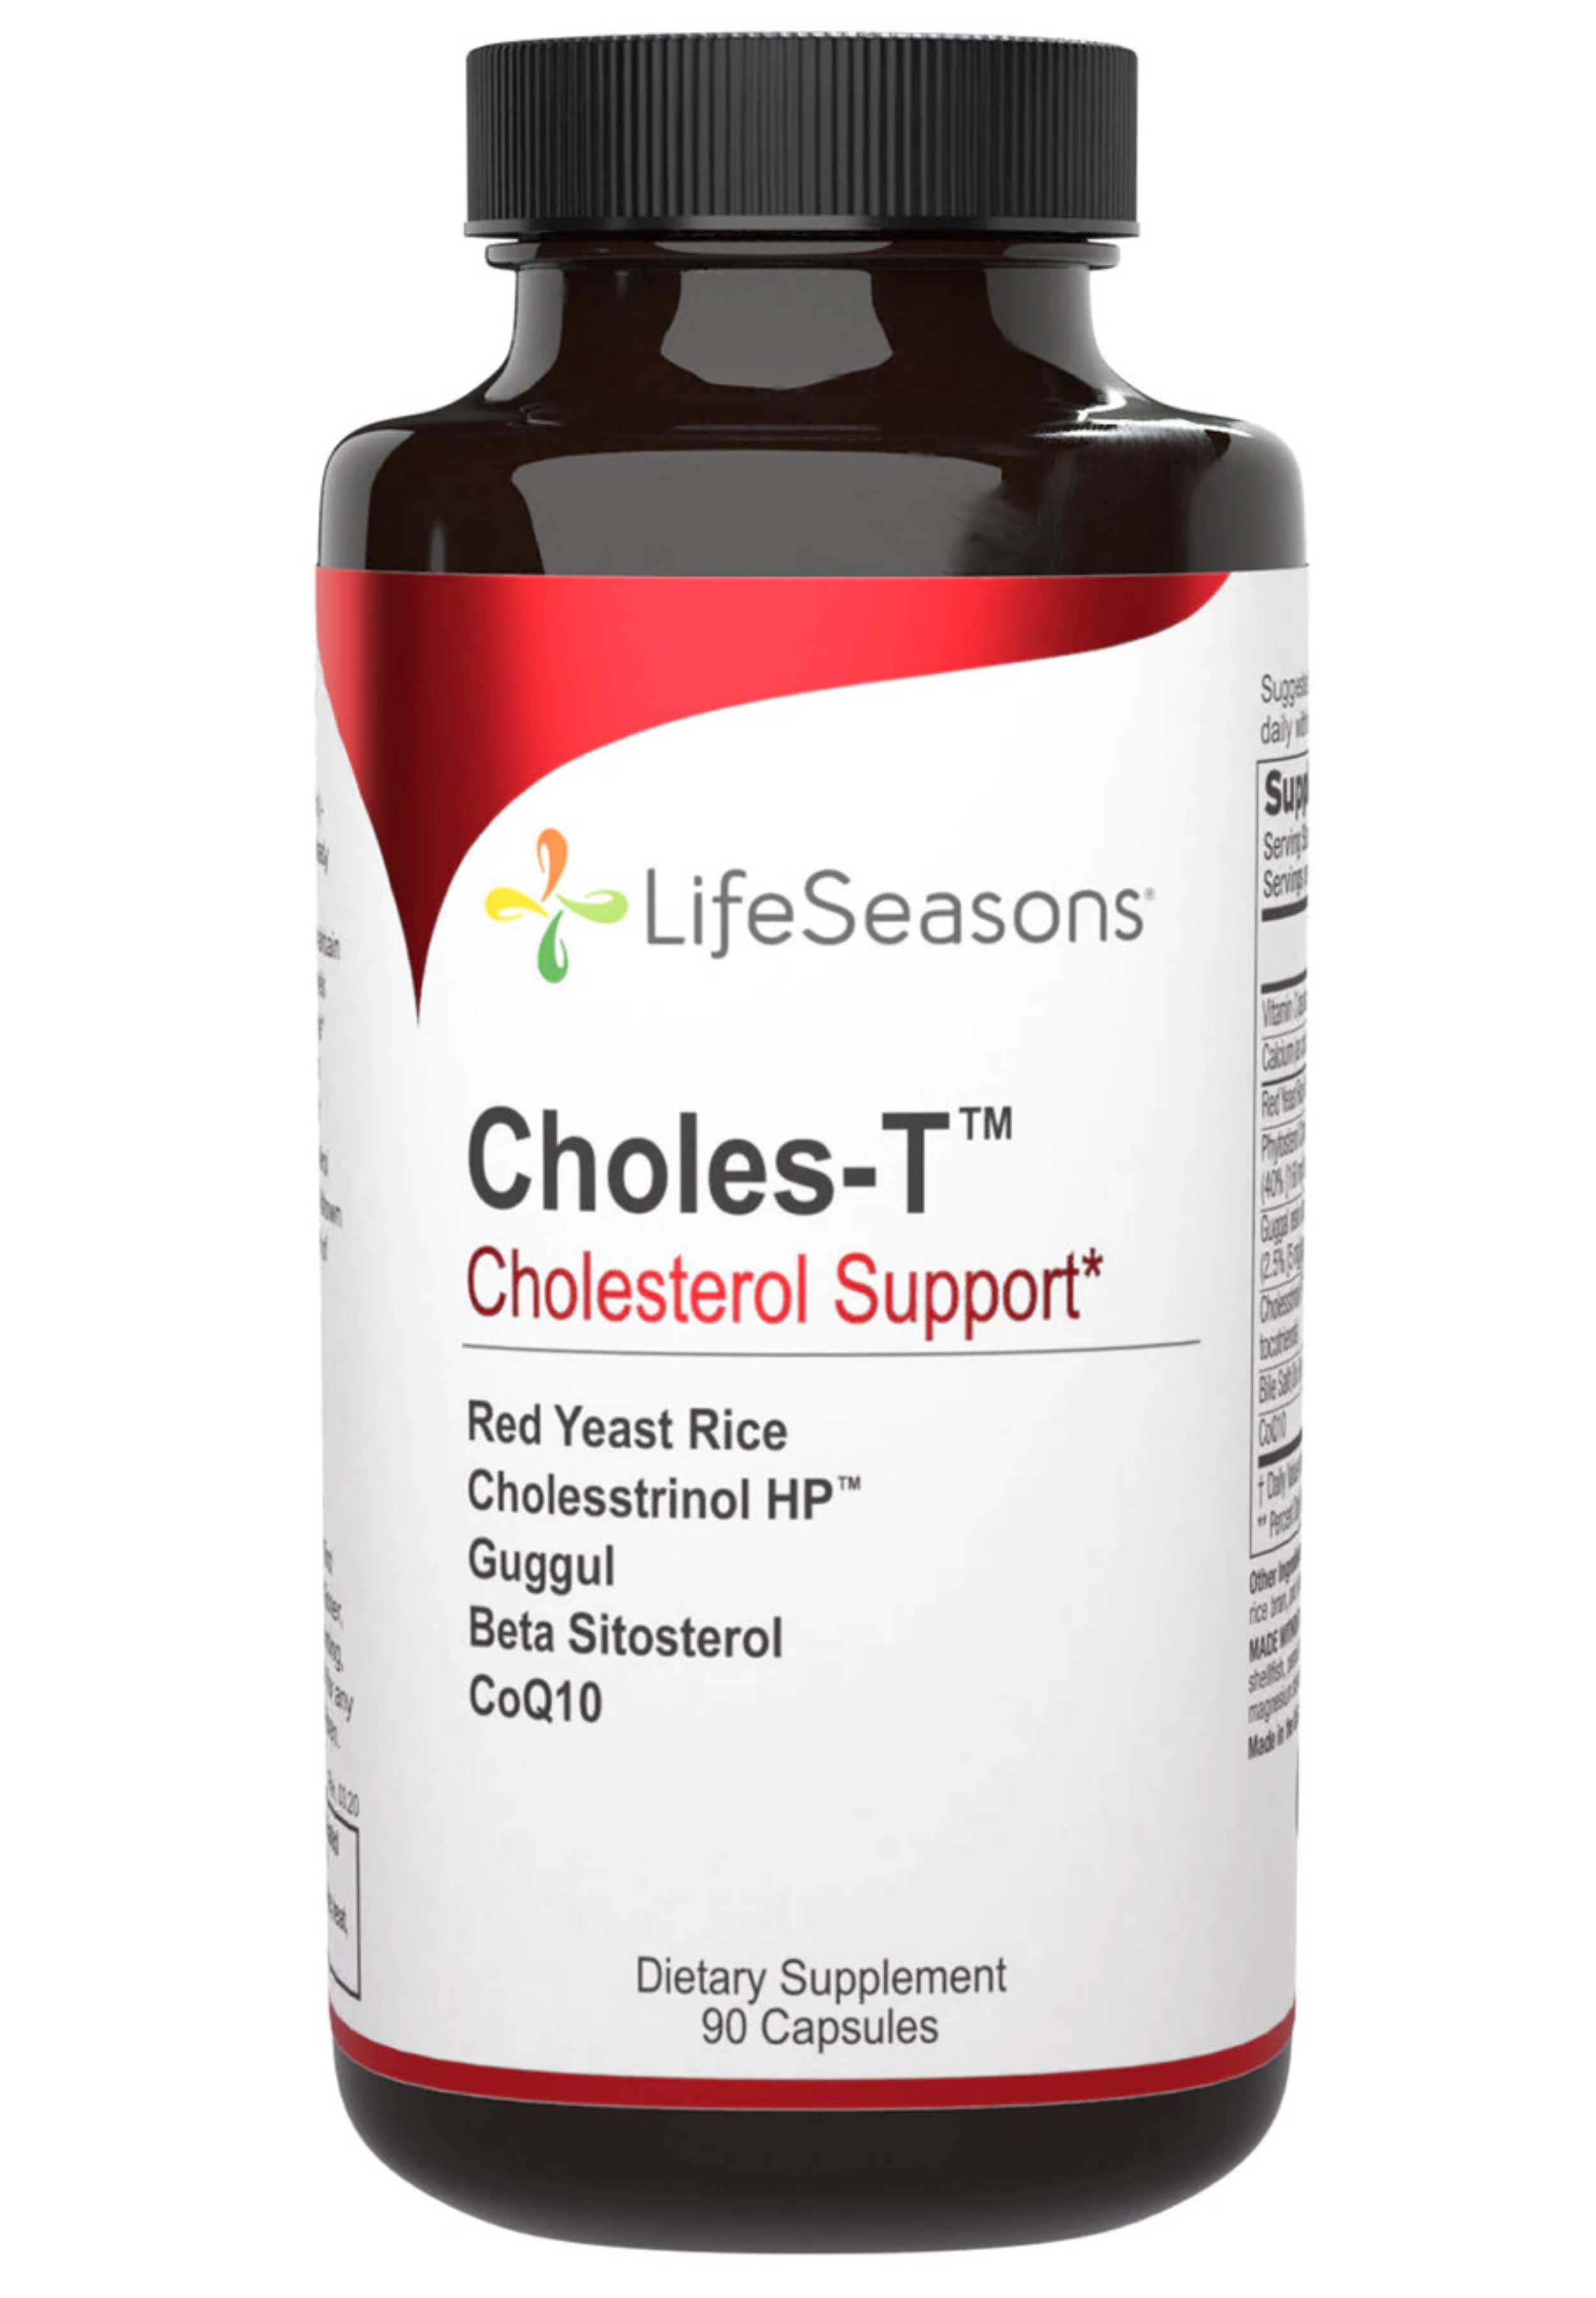 LifeSeasons Choles-T